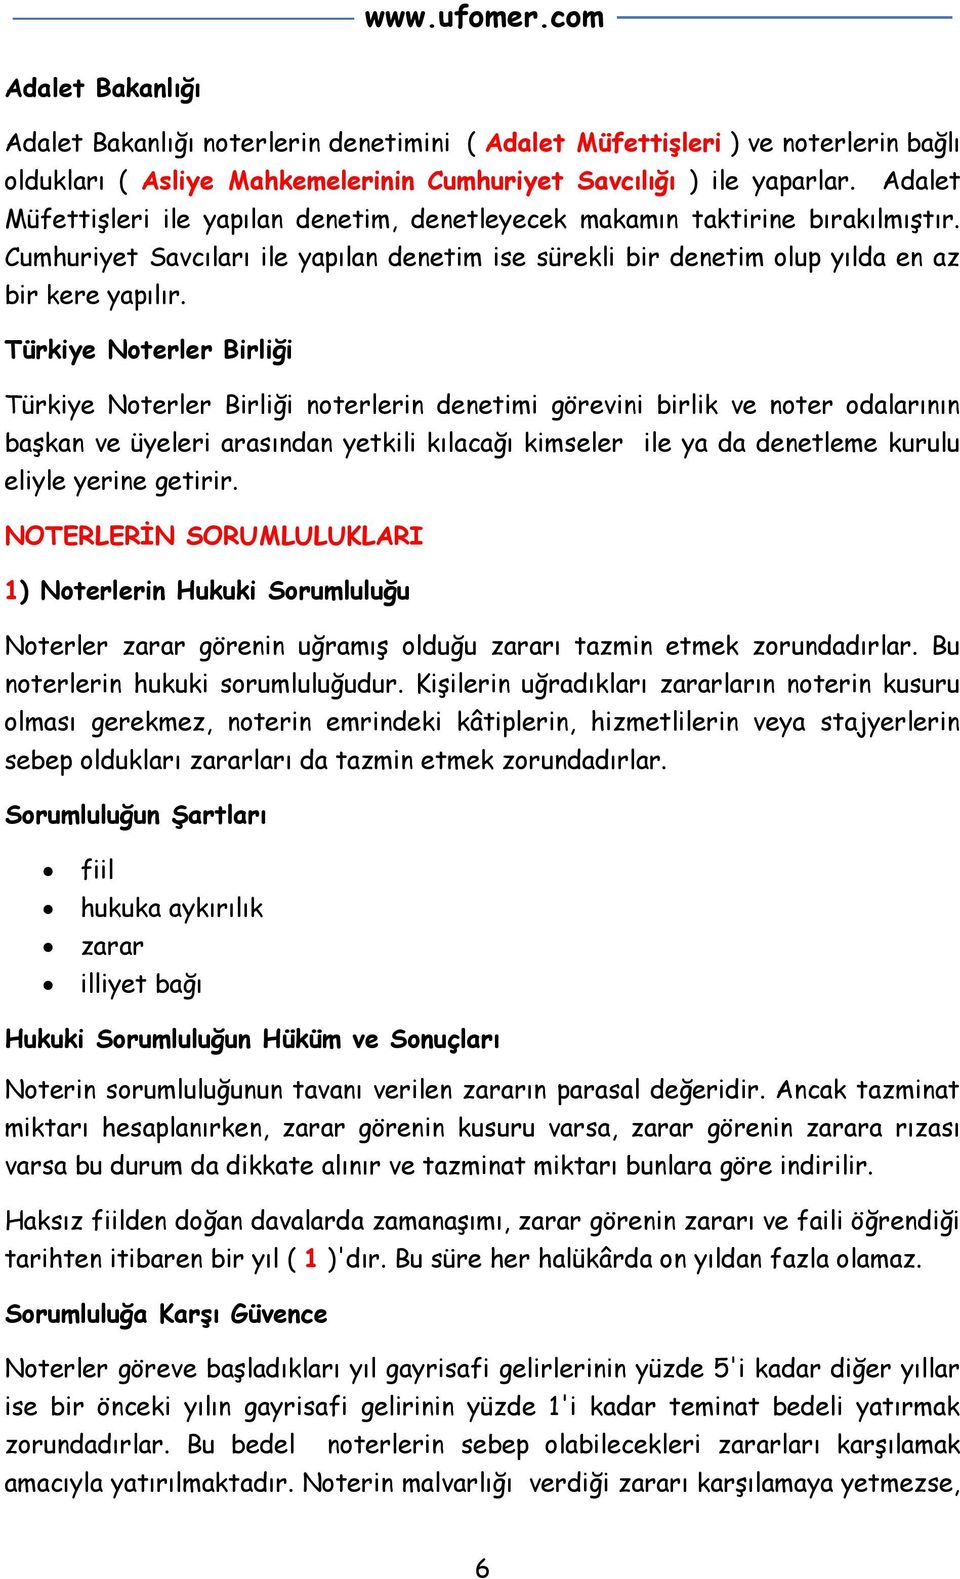 Türkiye Noterler Birliği Türkiye Noterler Birliği noterlerin denetimi görevini birlik ve noter odalarının başkan ve üyeleri arasından yetkili kılacağı kimseler ile ya da denetleme kurulu eliyle